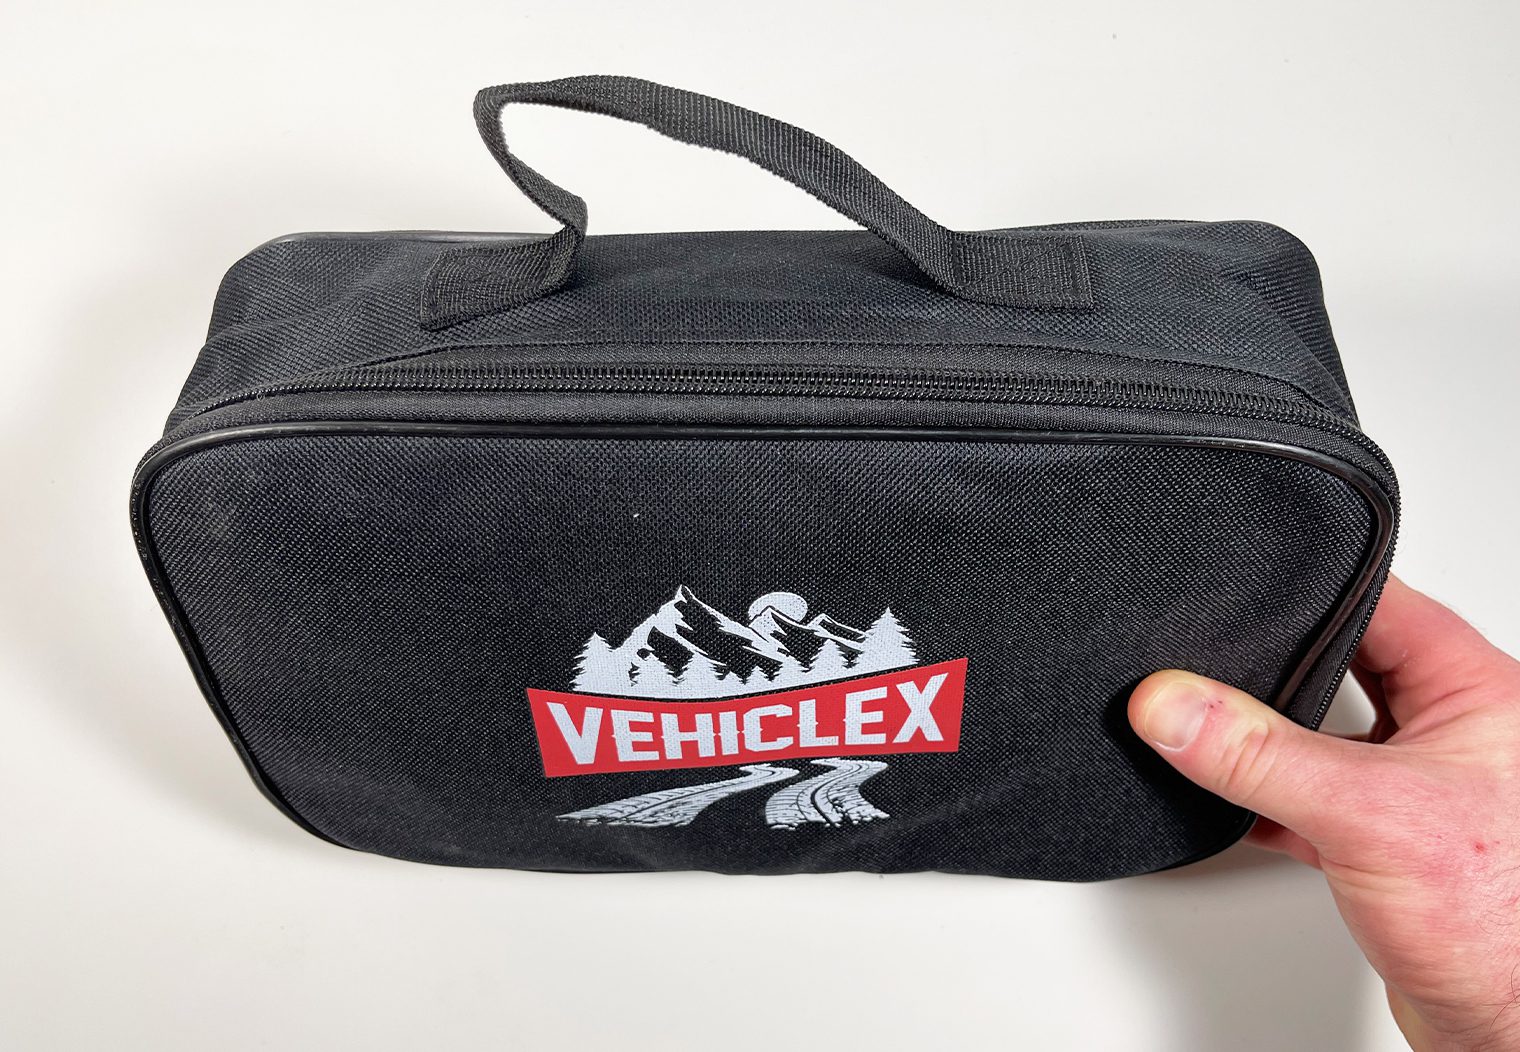 VehicleX Ratchet Tie-Down Carry Case Zip bag